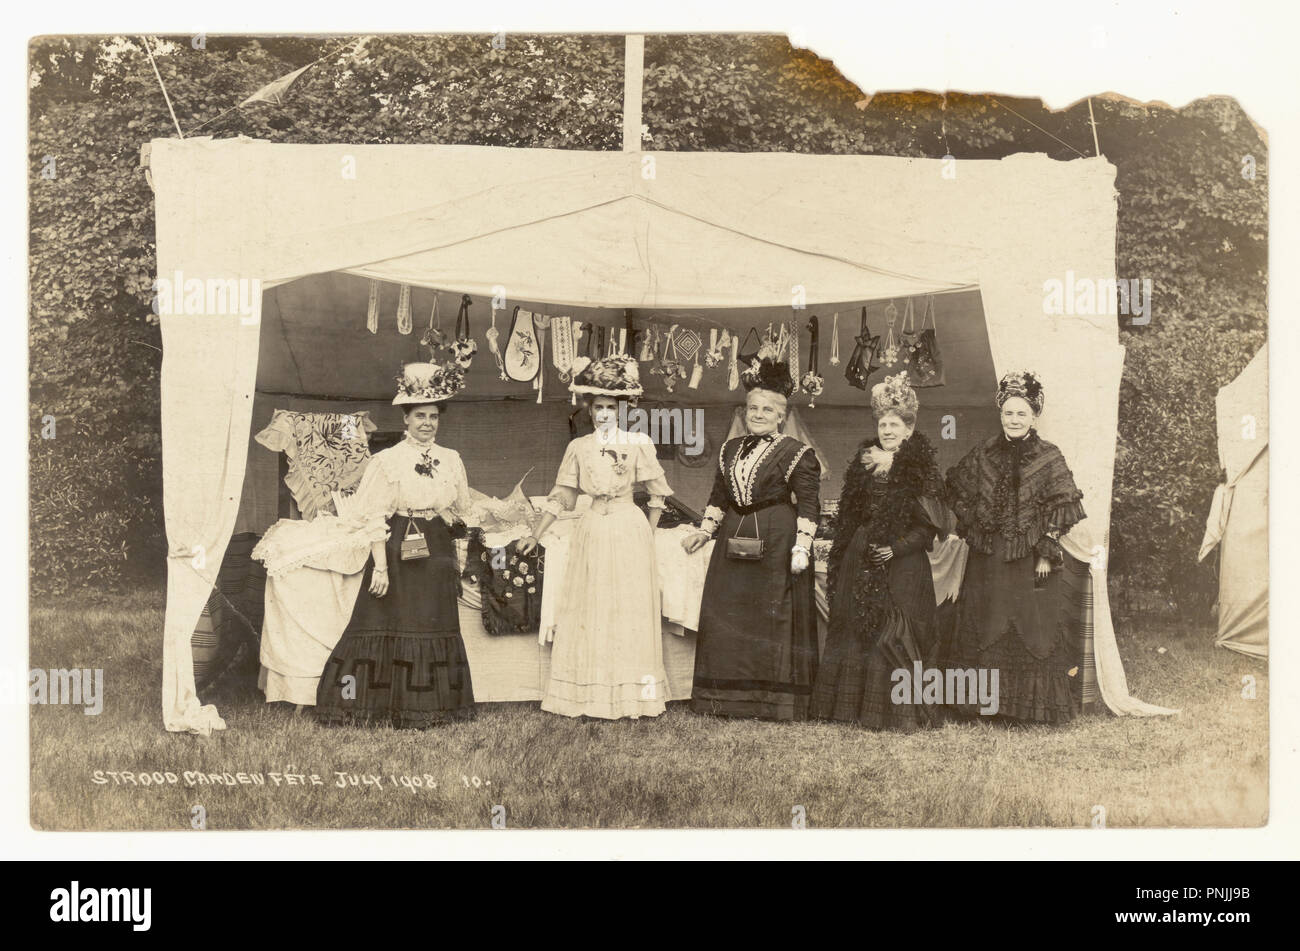 Original-Fotopostkarte aus der Zeit Edwardians zur Sommerzeit von Damen im Strood Garden Fete, die für ein Foto von einem Stall posiert, der handgenähte Geschenke und handgefertigte Handarbeiten verkauft - wunderbare Bilder von Hüten, Frauen unterschiedlichen Alters, atemberaubende Outfits. Postkarte vom Juli 1908, Strood, Kent, Großbritannien Stockfoto